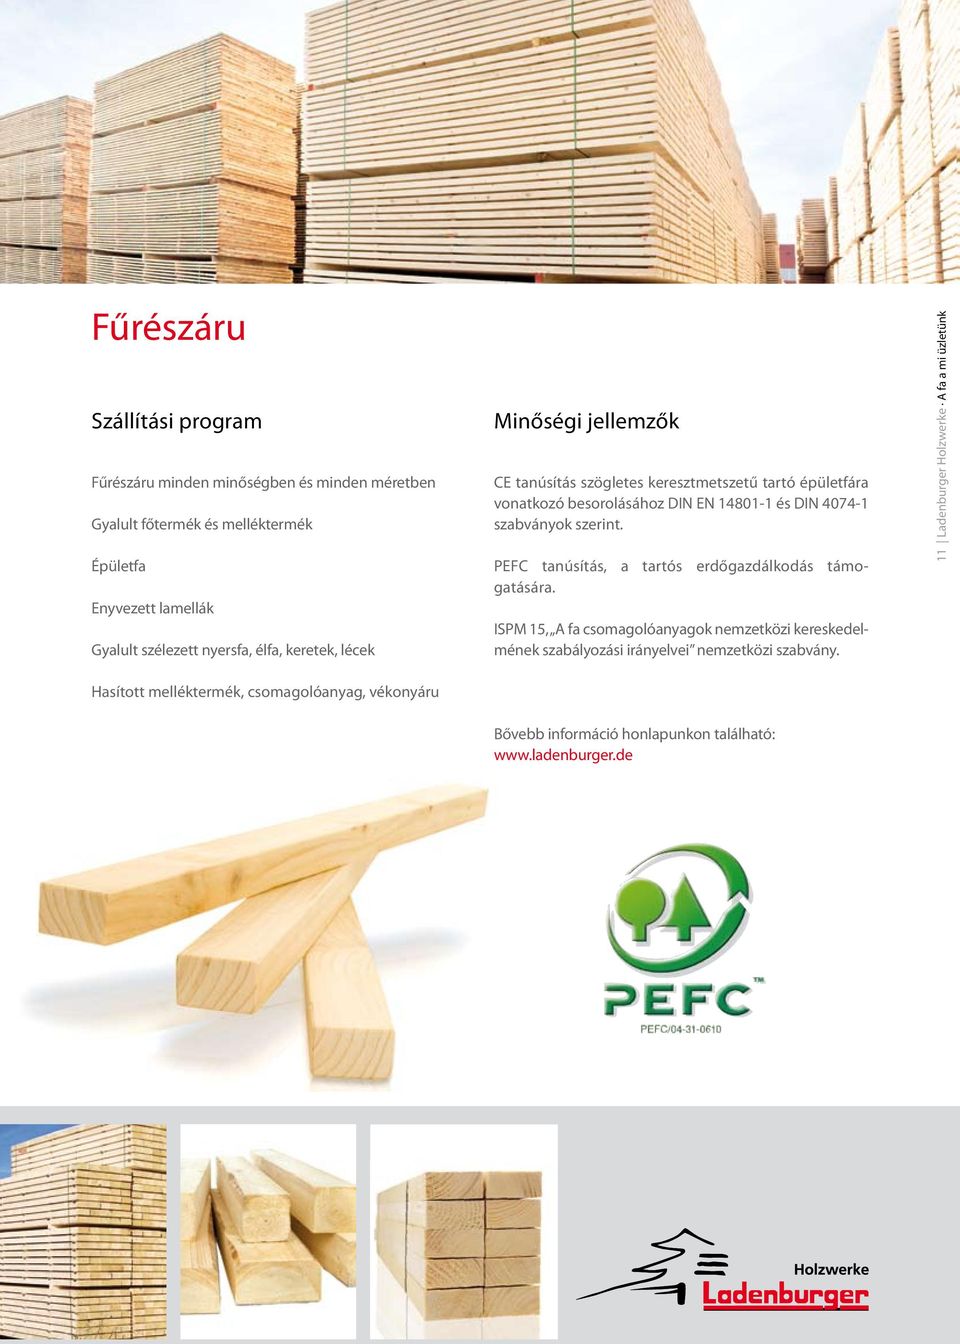 4074-1 szabványok szerint. PEFC tanúsítás, a tartós erdőgazdálkodás támogatására.